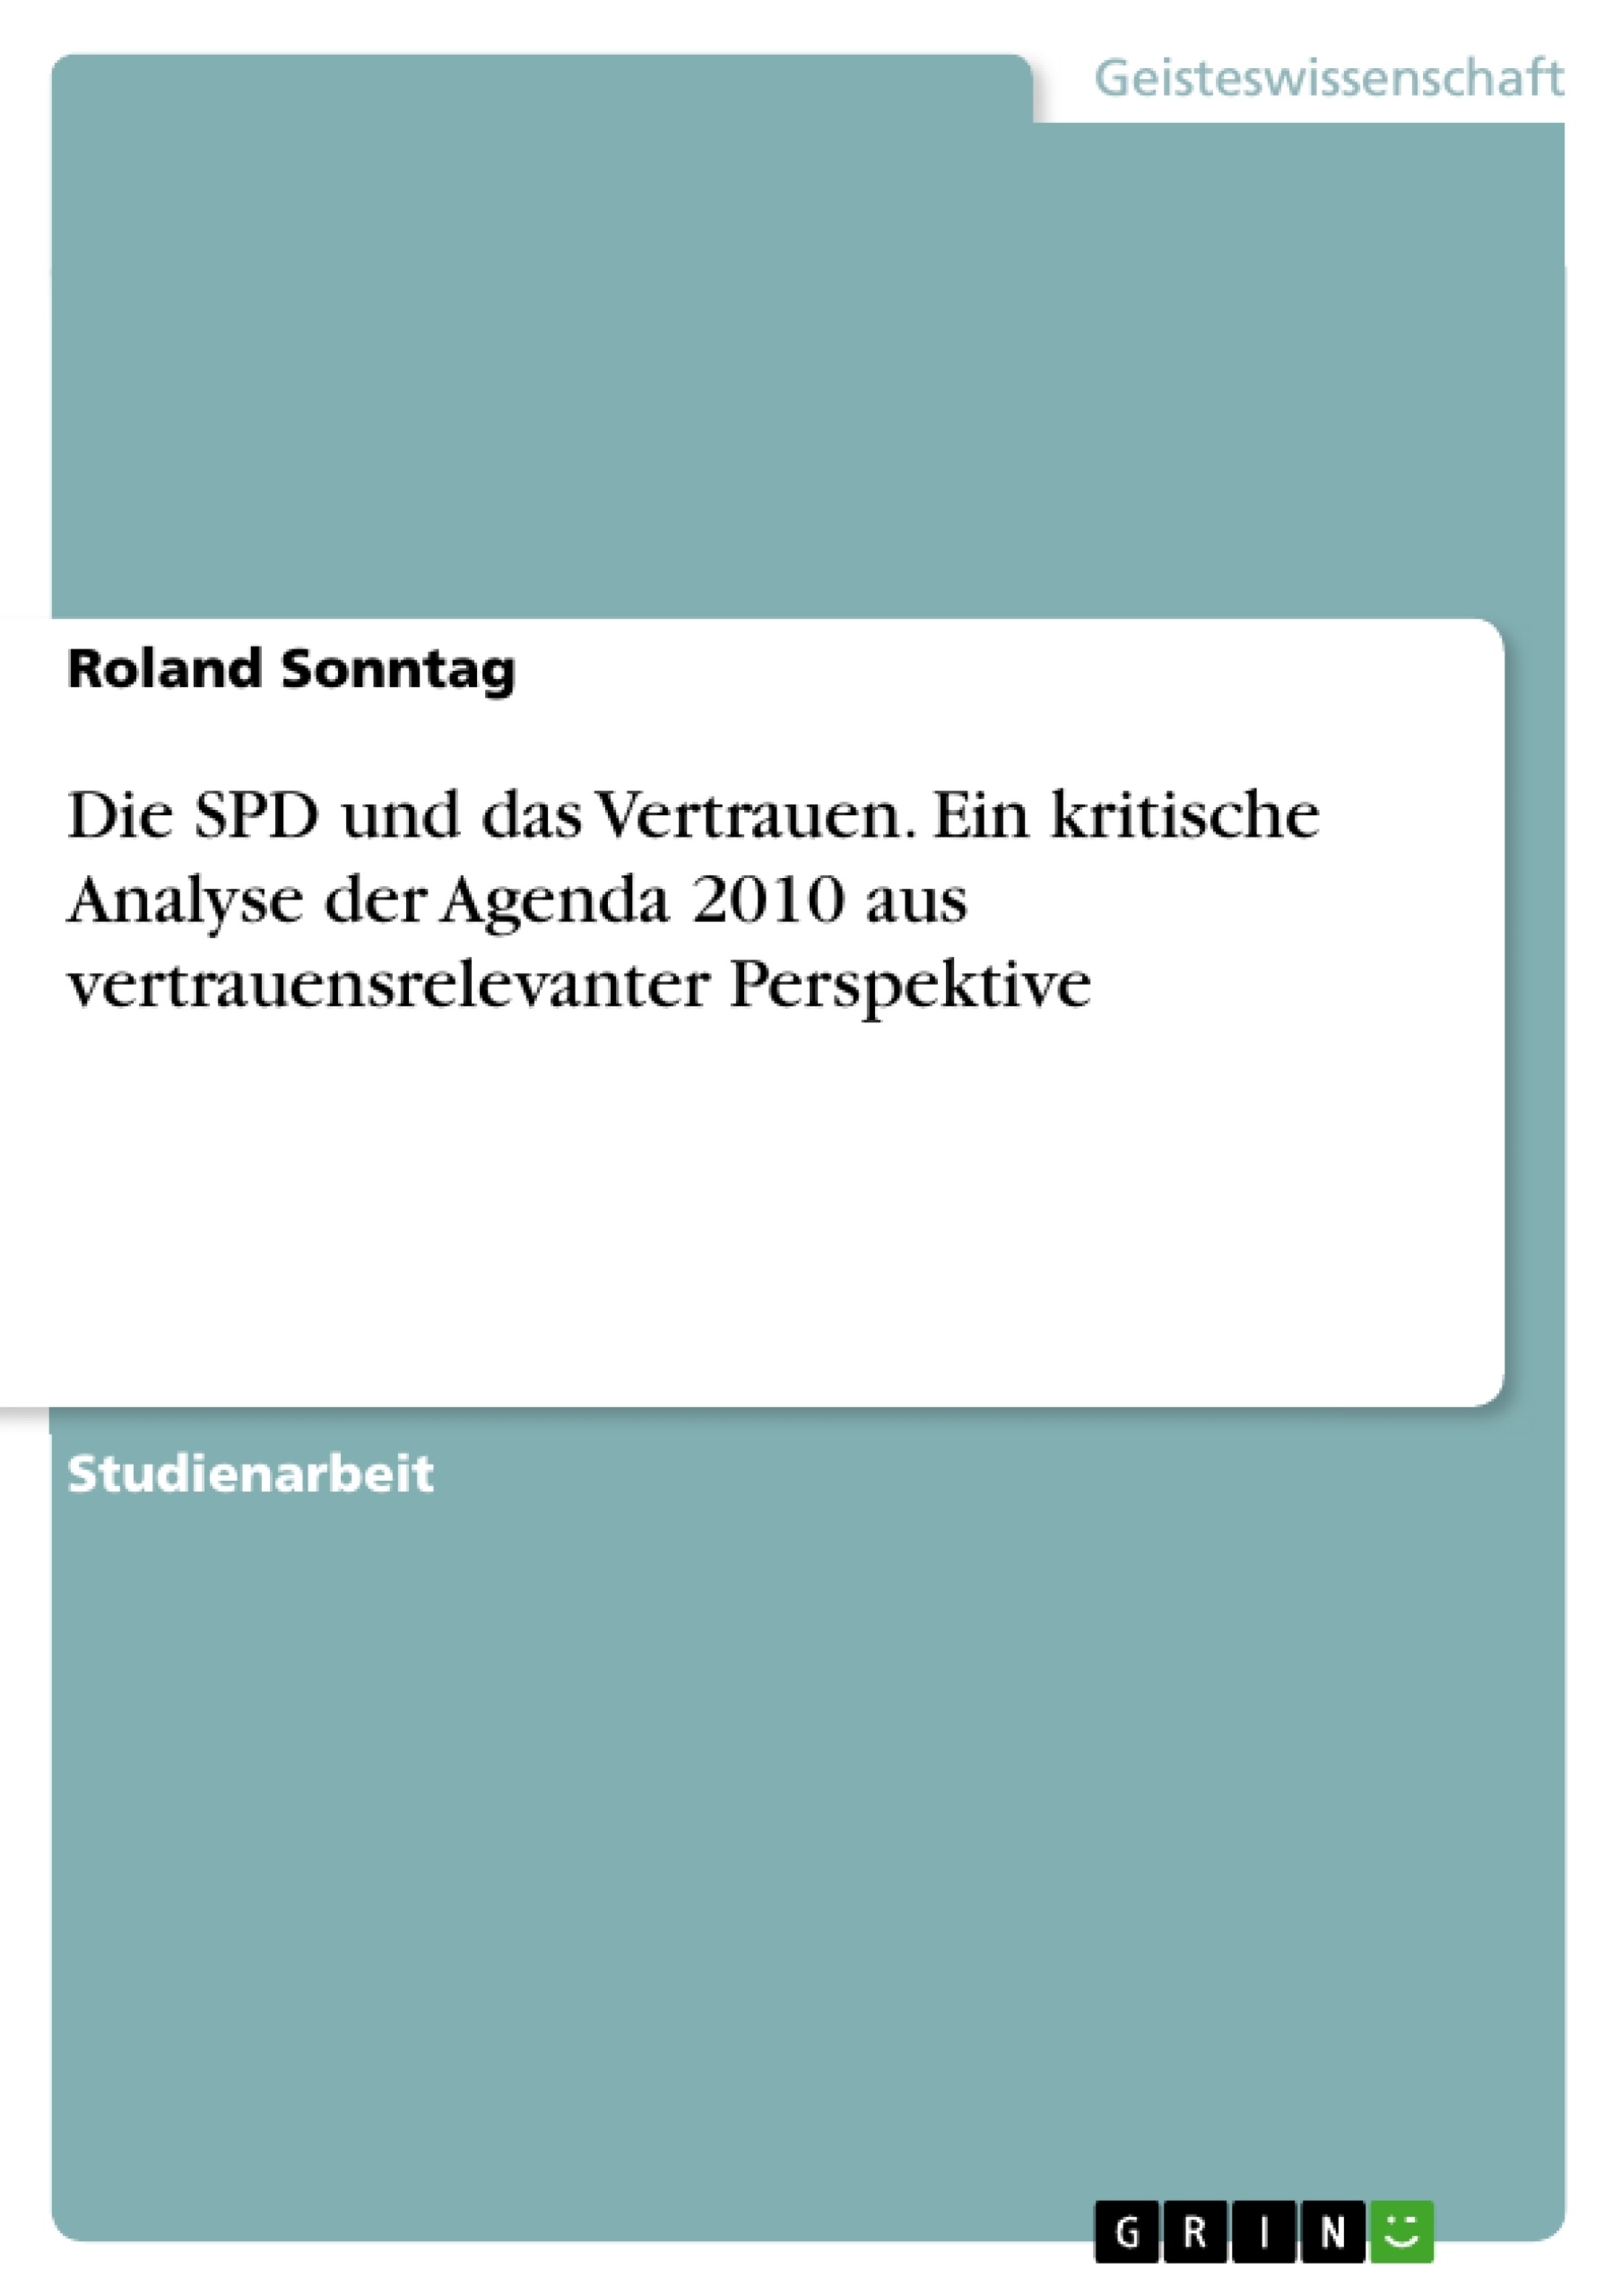 Title: Die SPD und das Vertrauen. Ein kritische Analyse der Agenda 2010 aus vertrauensrelevanter Perspektive